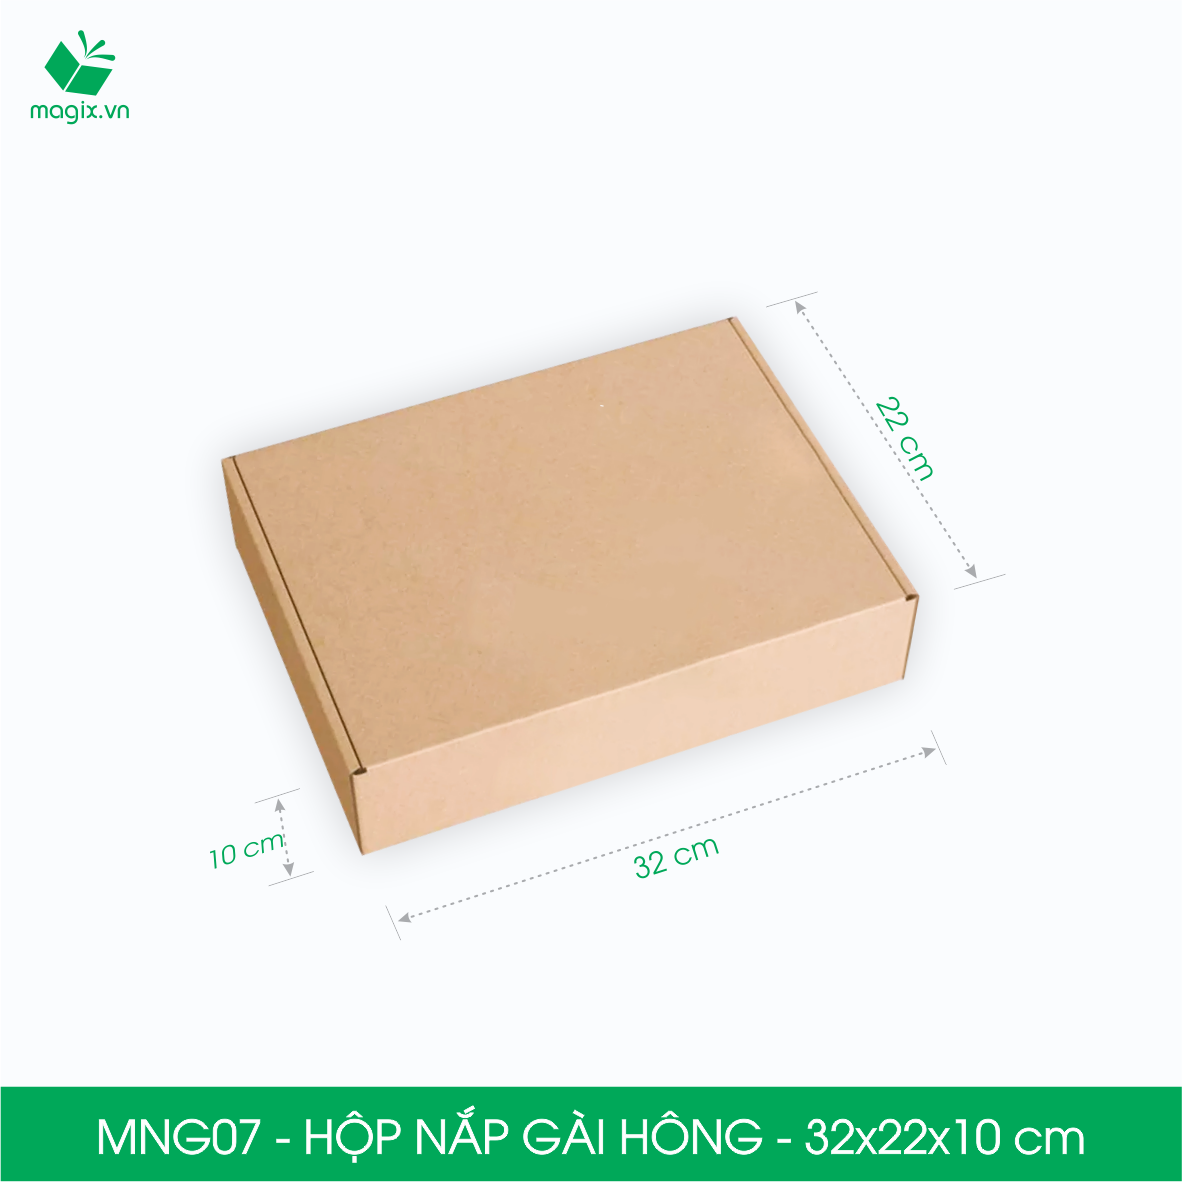 MNG07 - 32x22x10cm - Combo 20 hộp nắp gài hông - Thùng carton đóng hàng